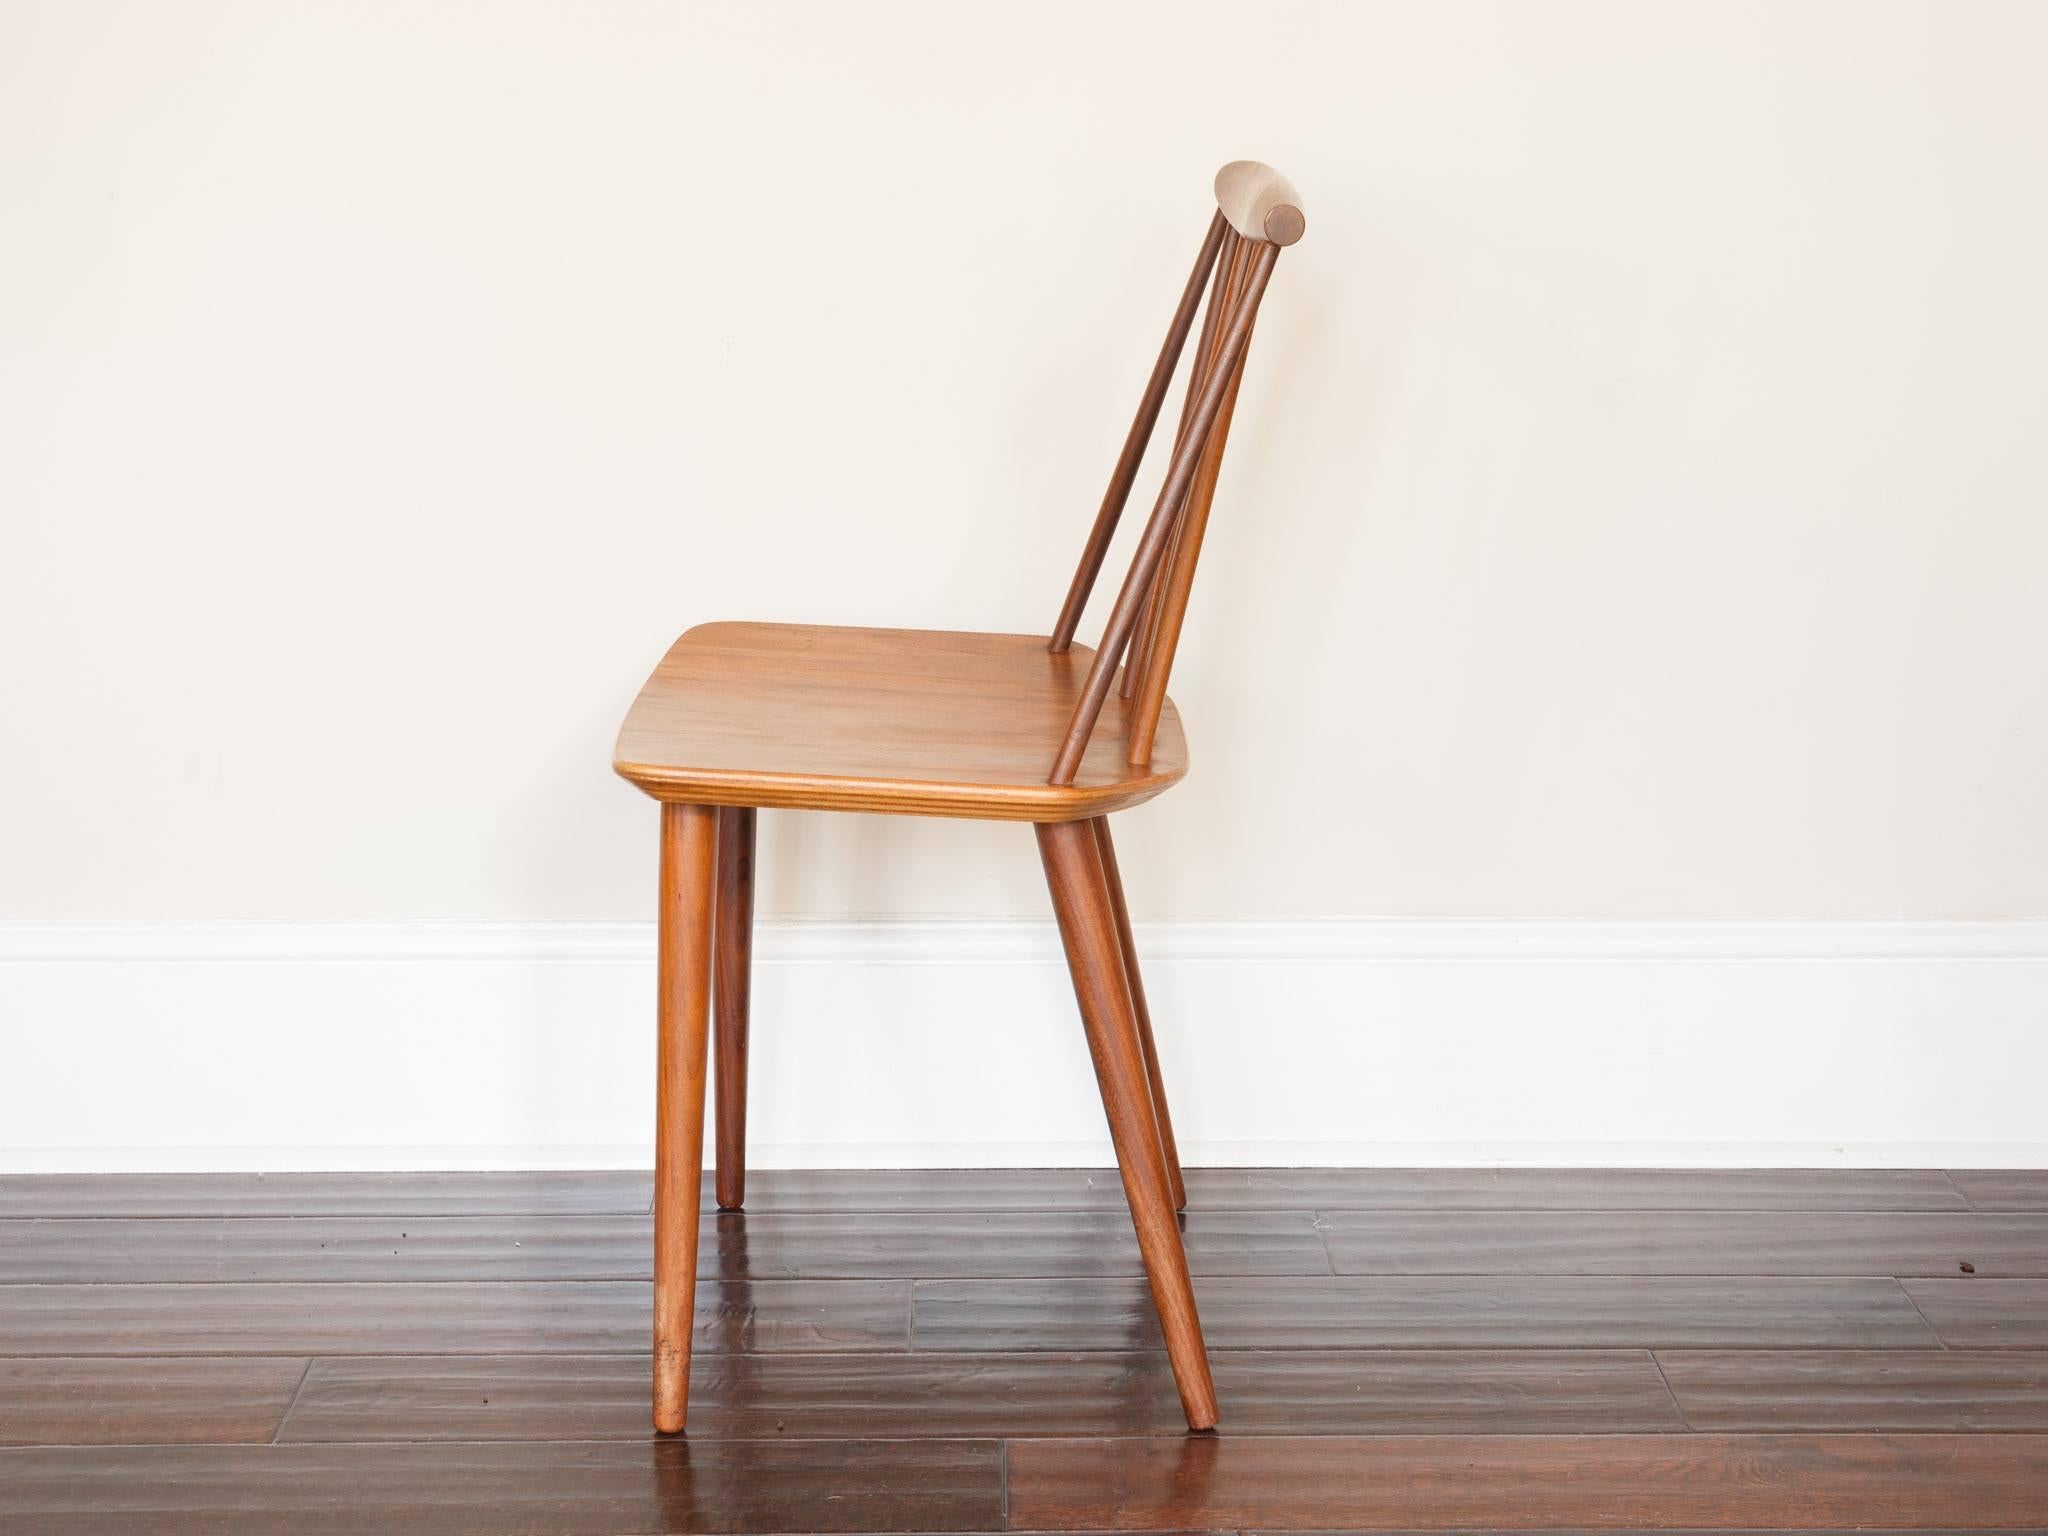 Chaise de salle à manger danoise Folke Pålsson pour FDB Møbelfabrik J77 en noyer avec dossier en bois. Le design est basé sur la chaise Windsor des années 1960:: mais avec une touche de design danois. La chaise a un dossier et des pieds en noyer